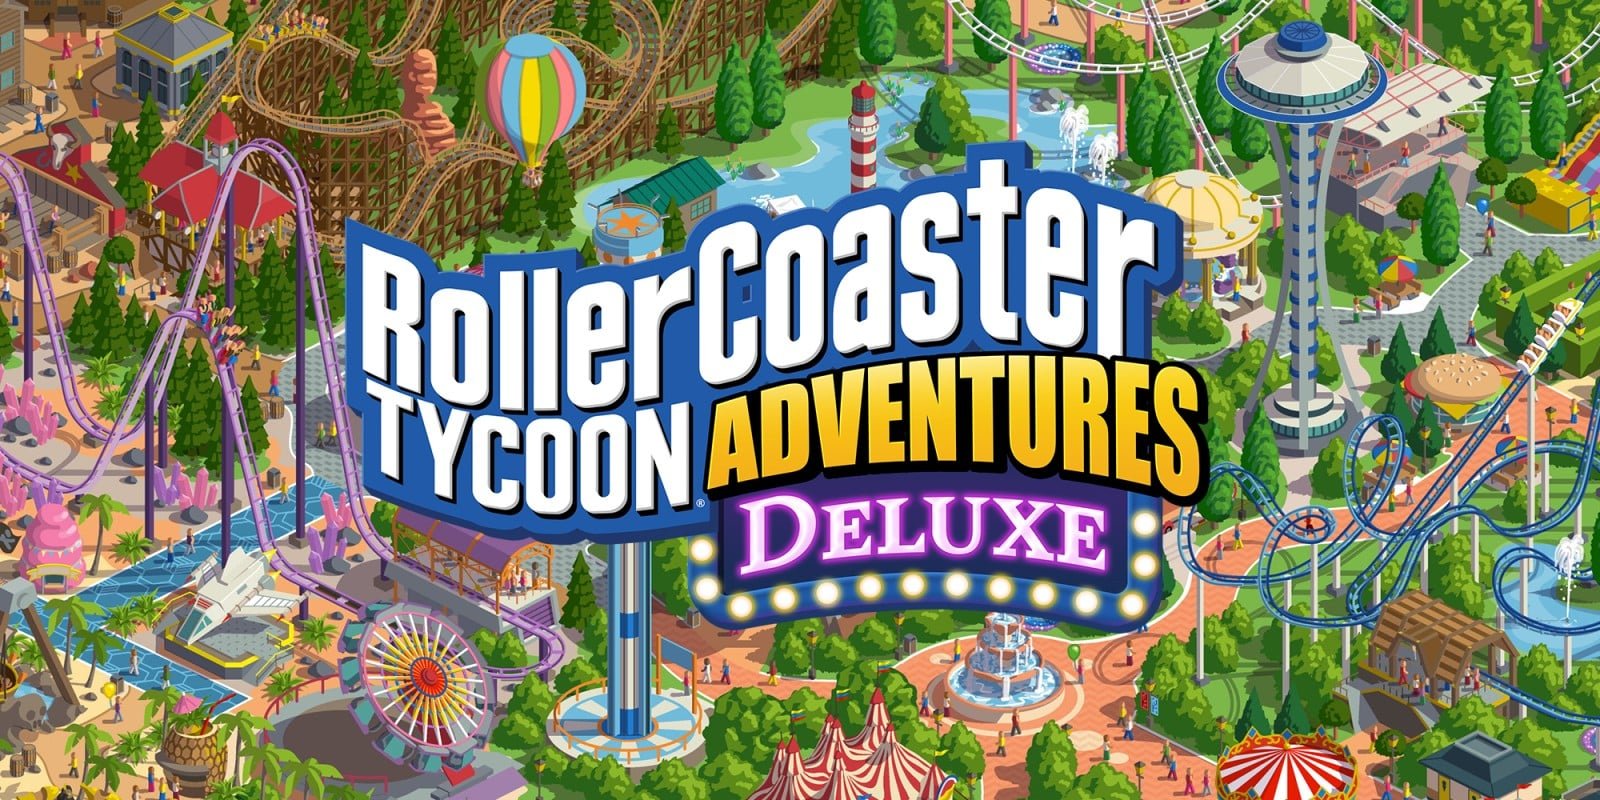 RollerCoaster Tycoon Adventures Deluxe sort aujourd’hui sur Nintendo Switch